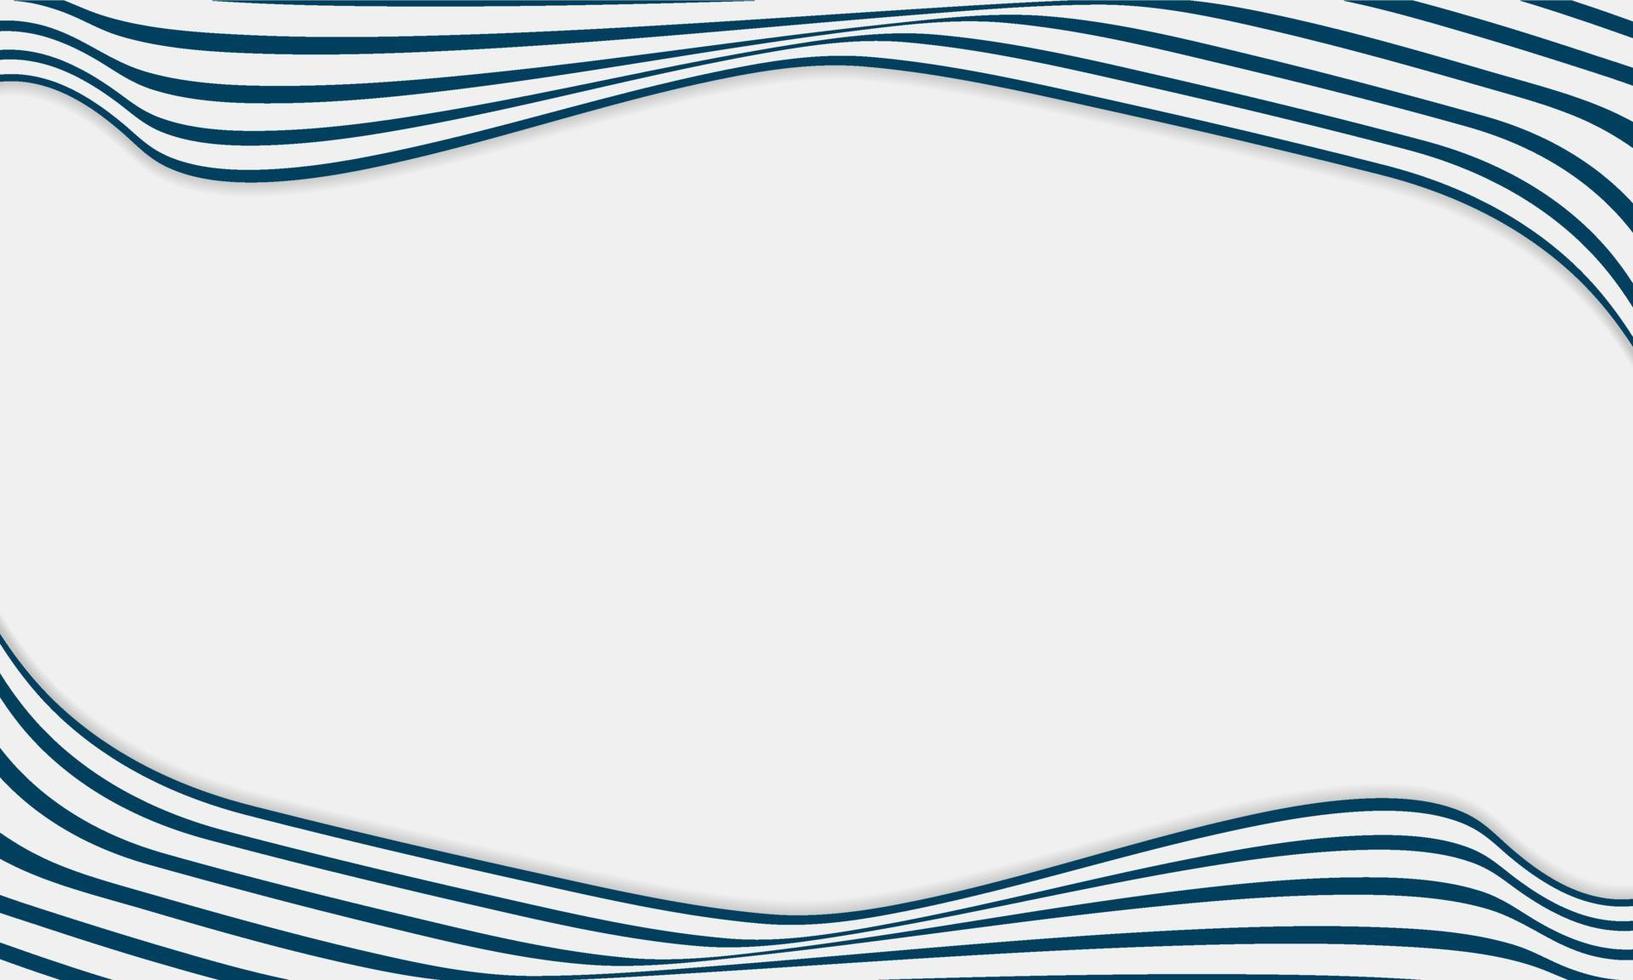 abstrakt randig bakgrund i vitt och blått med vågiga linjer mönster. vektor